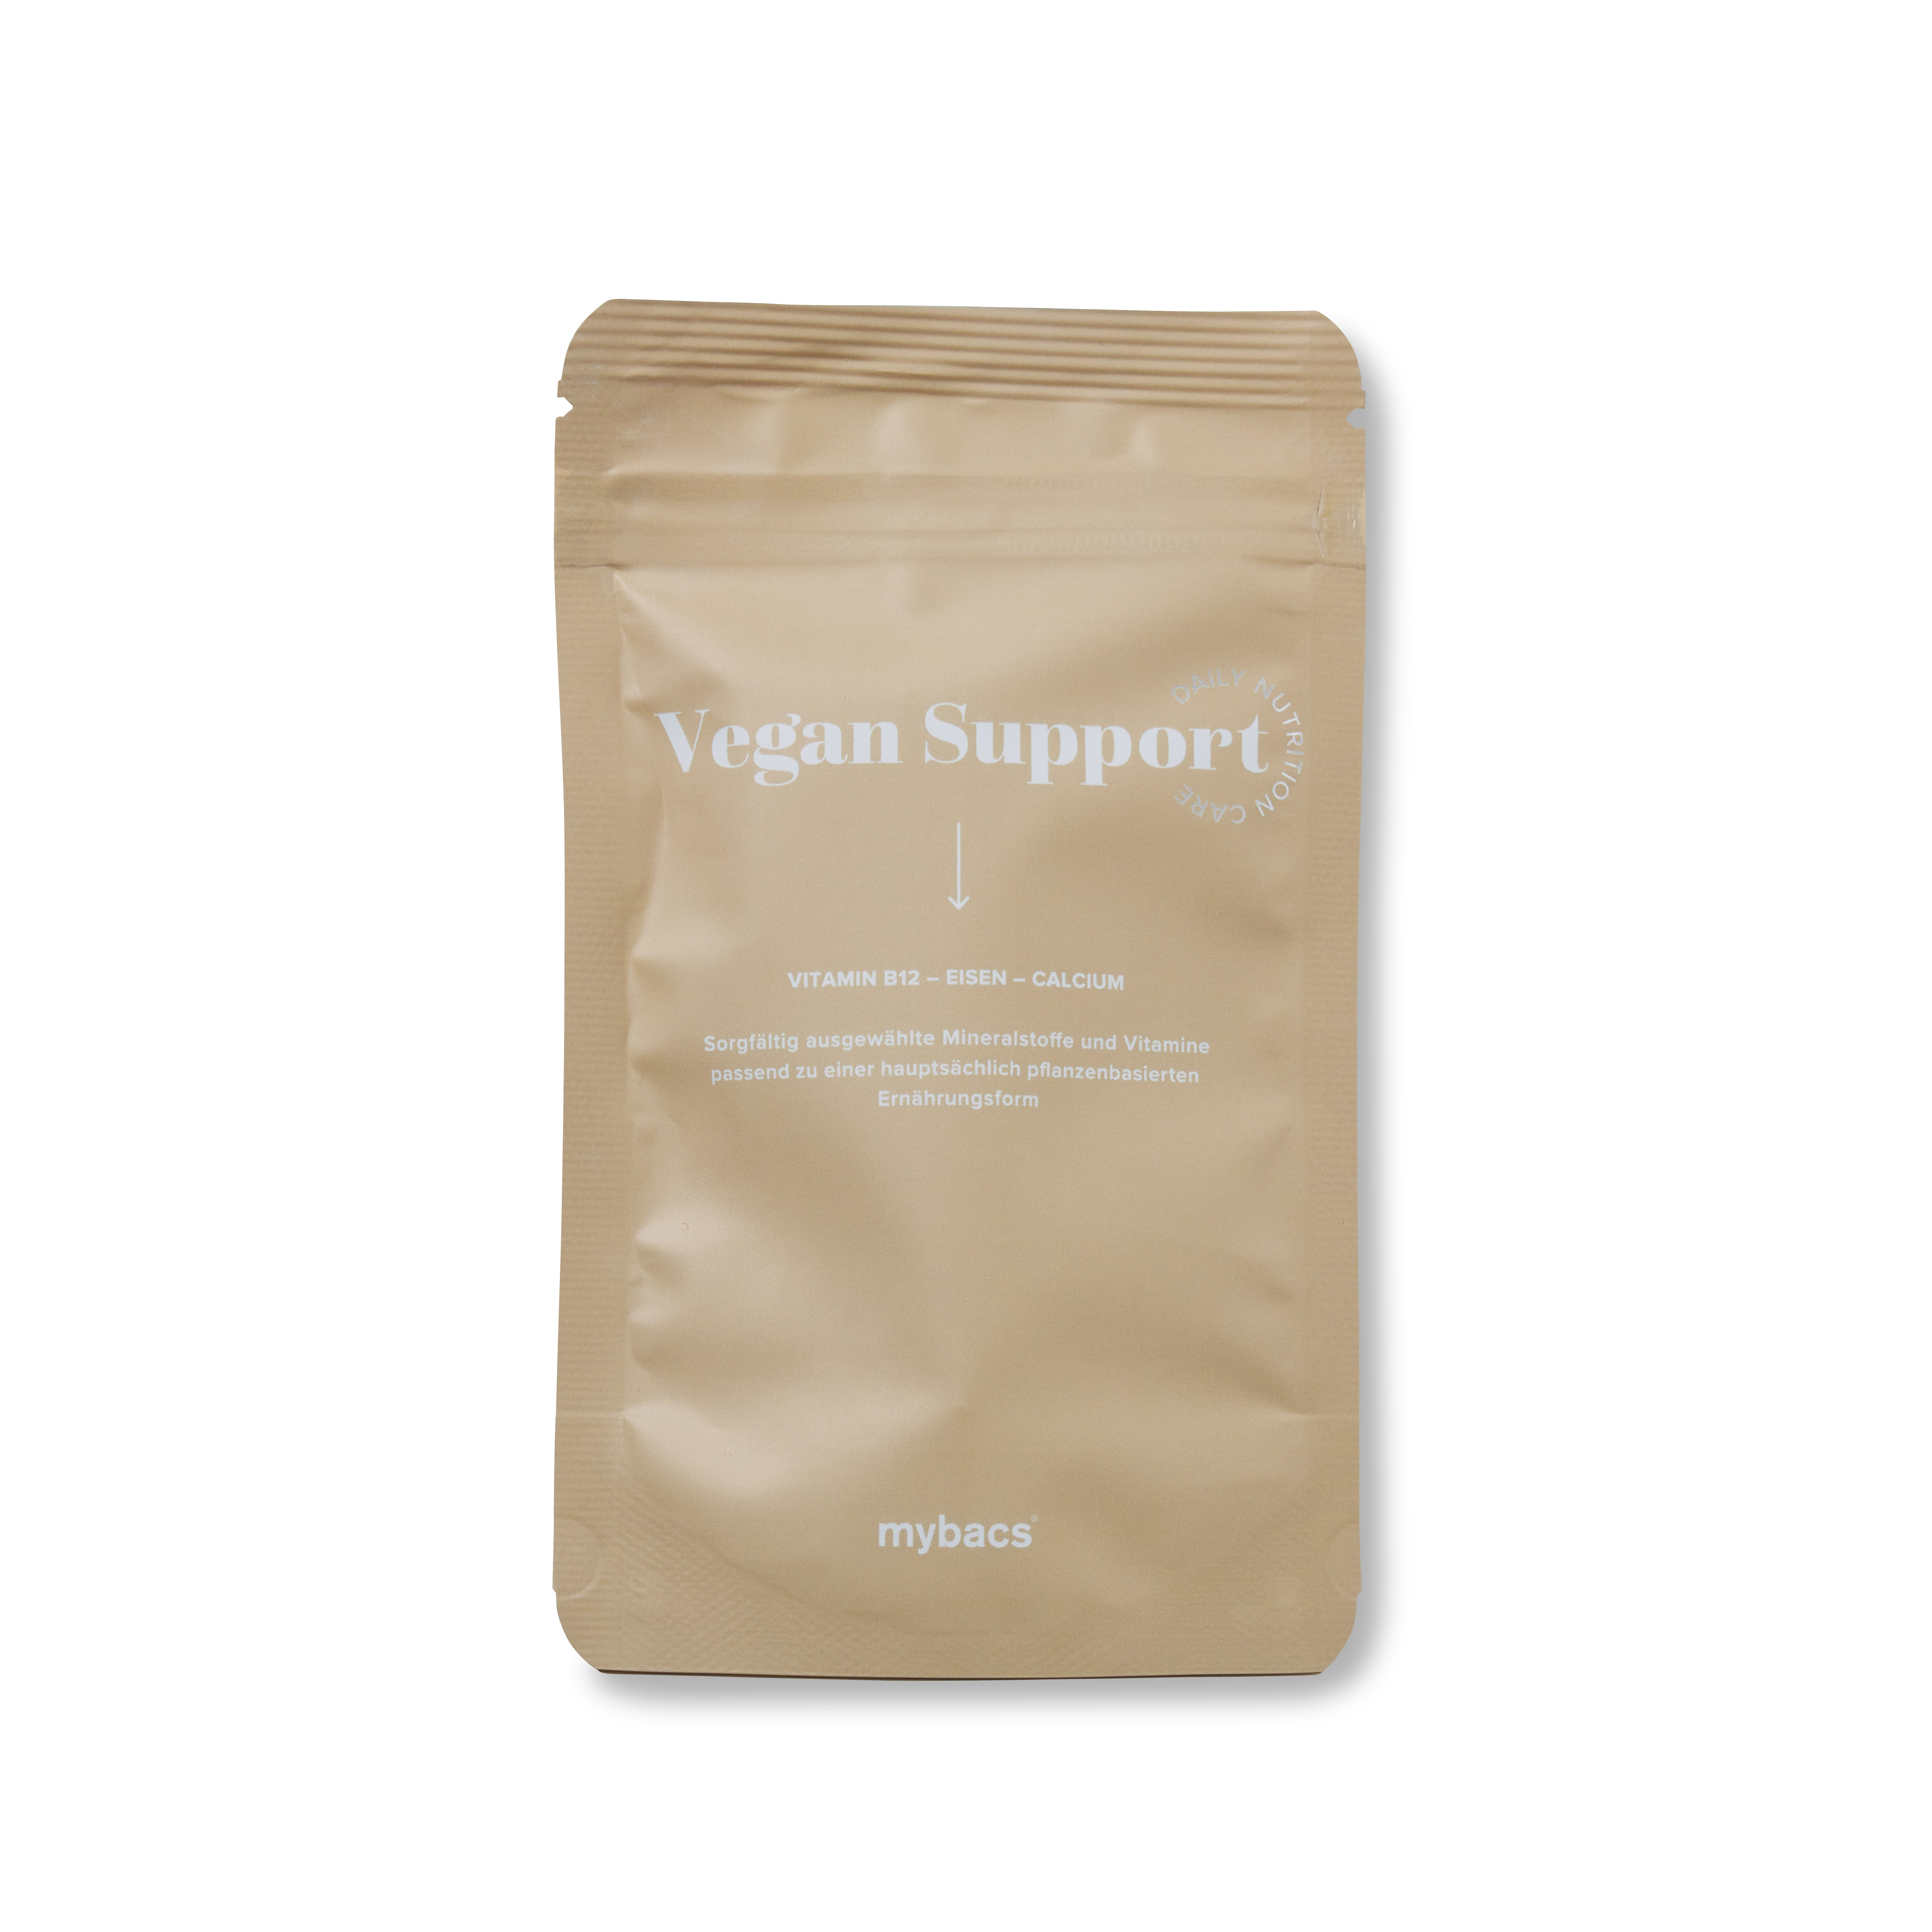 Vegan Support